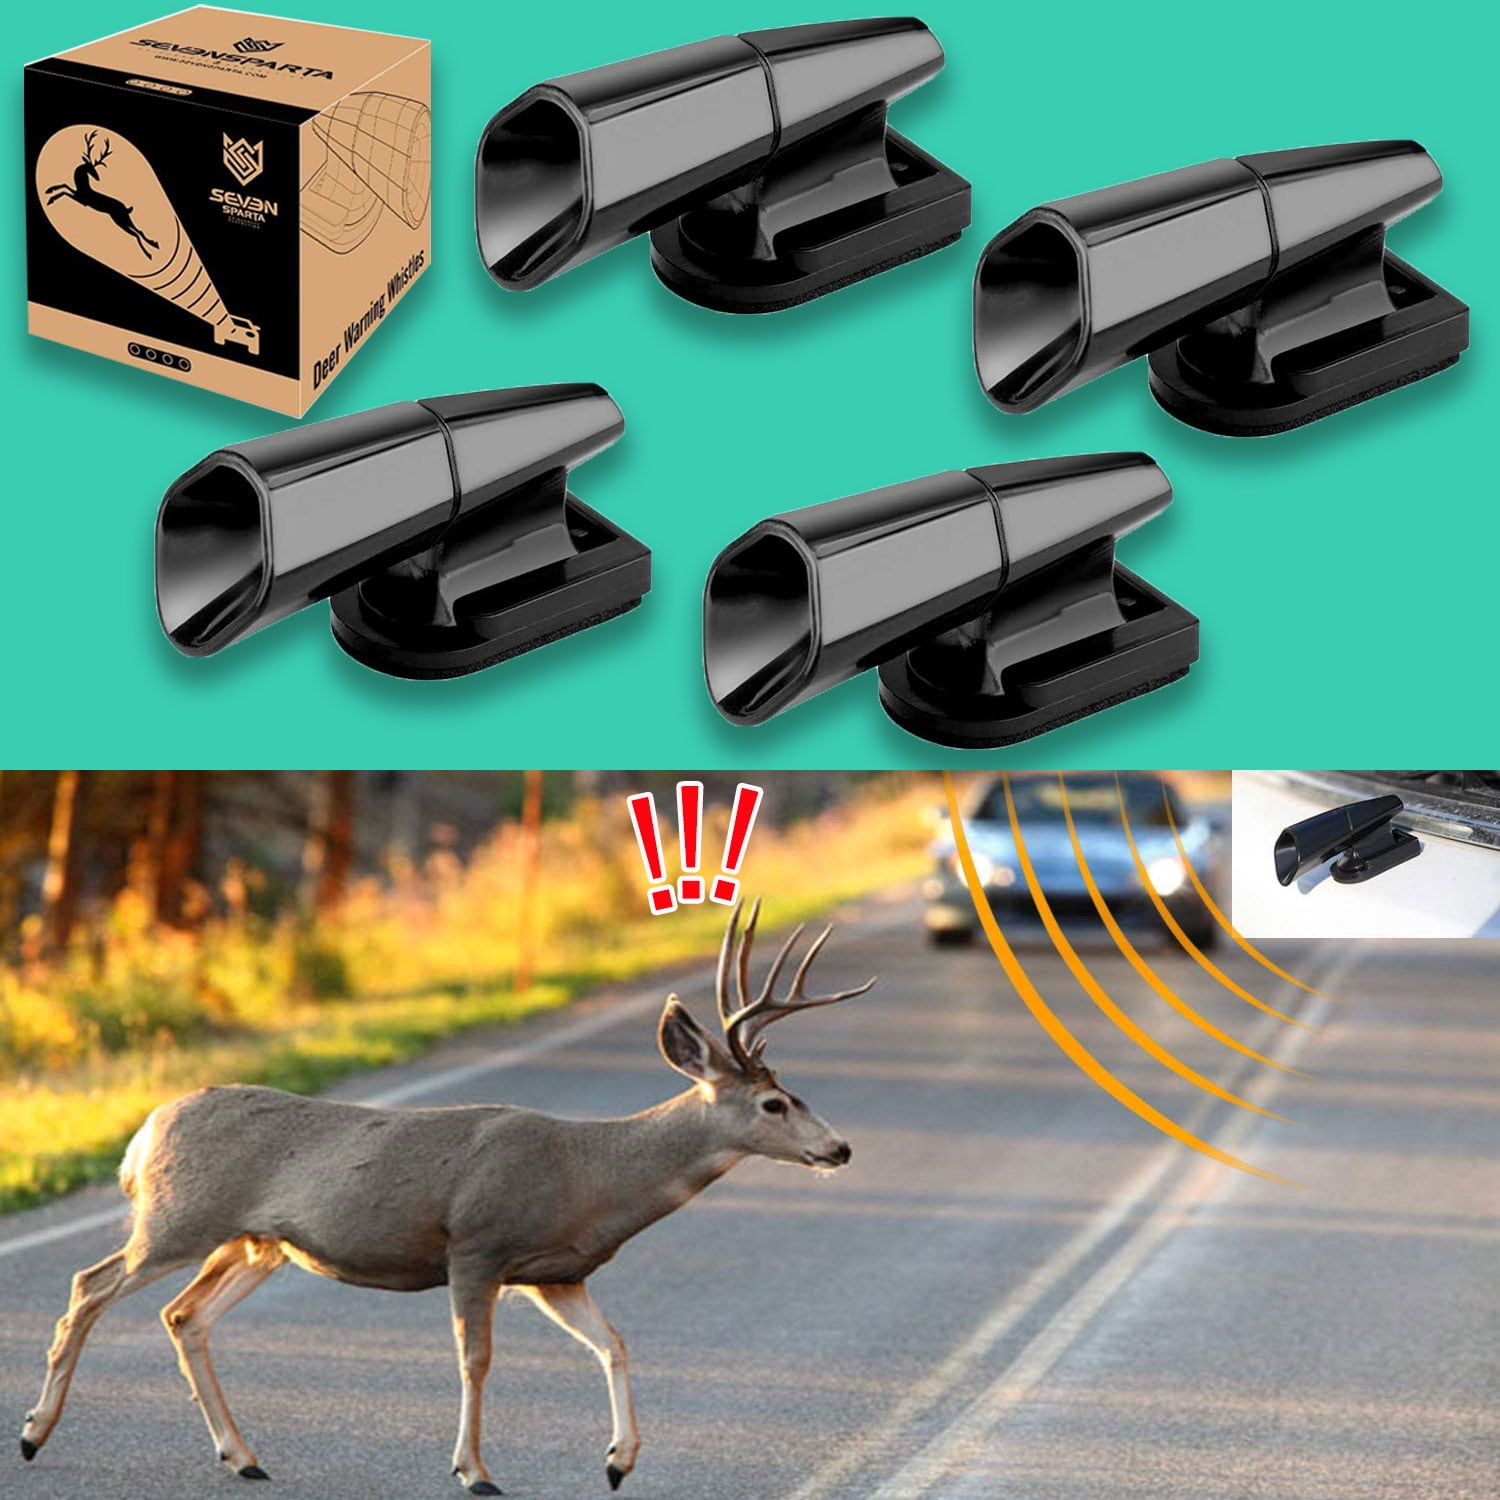  SAVITA 4 PCS Deer Whistles Wildlife Warning for Cars